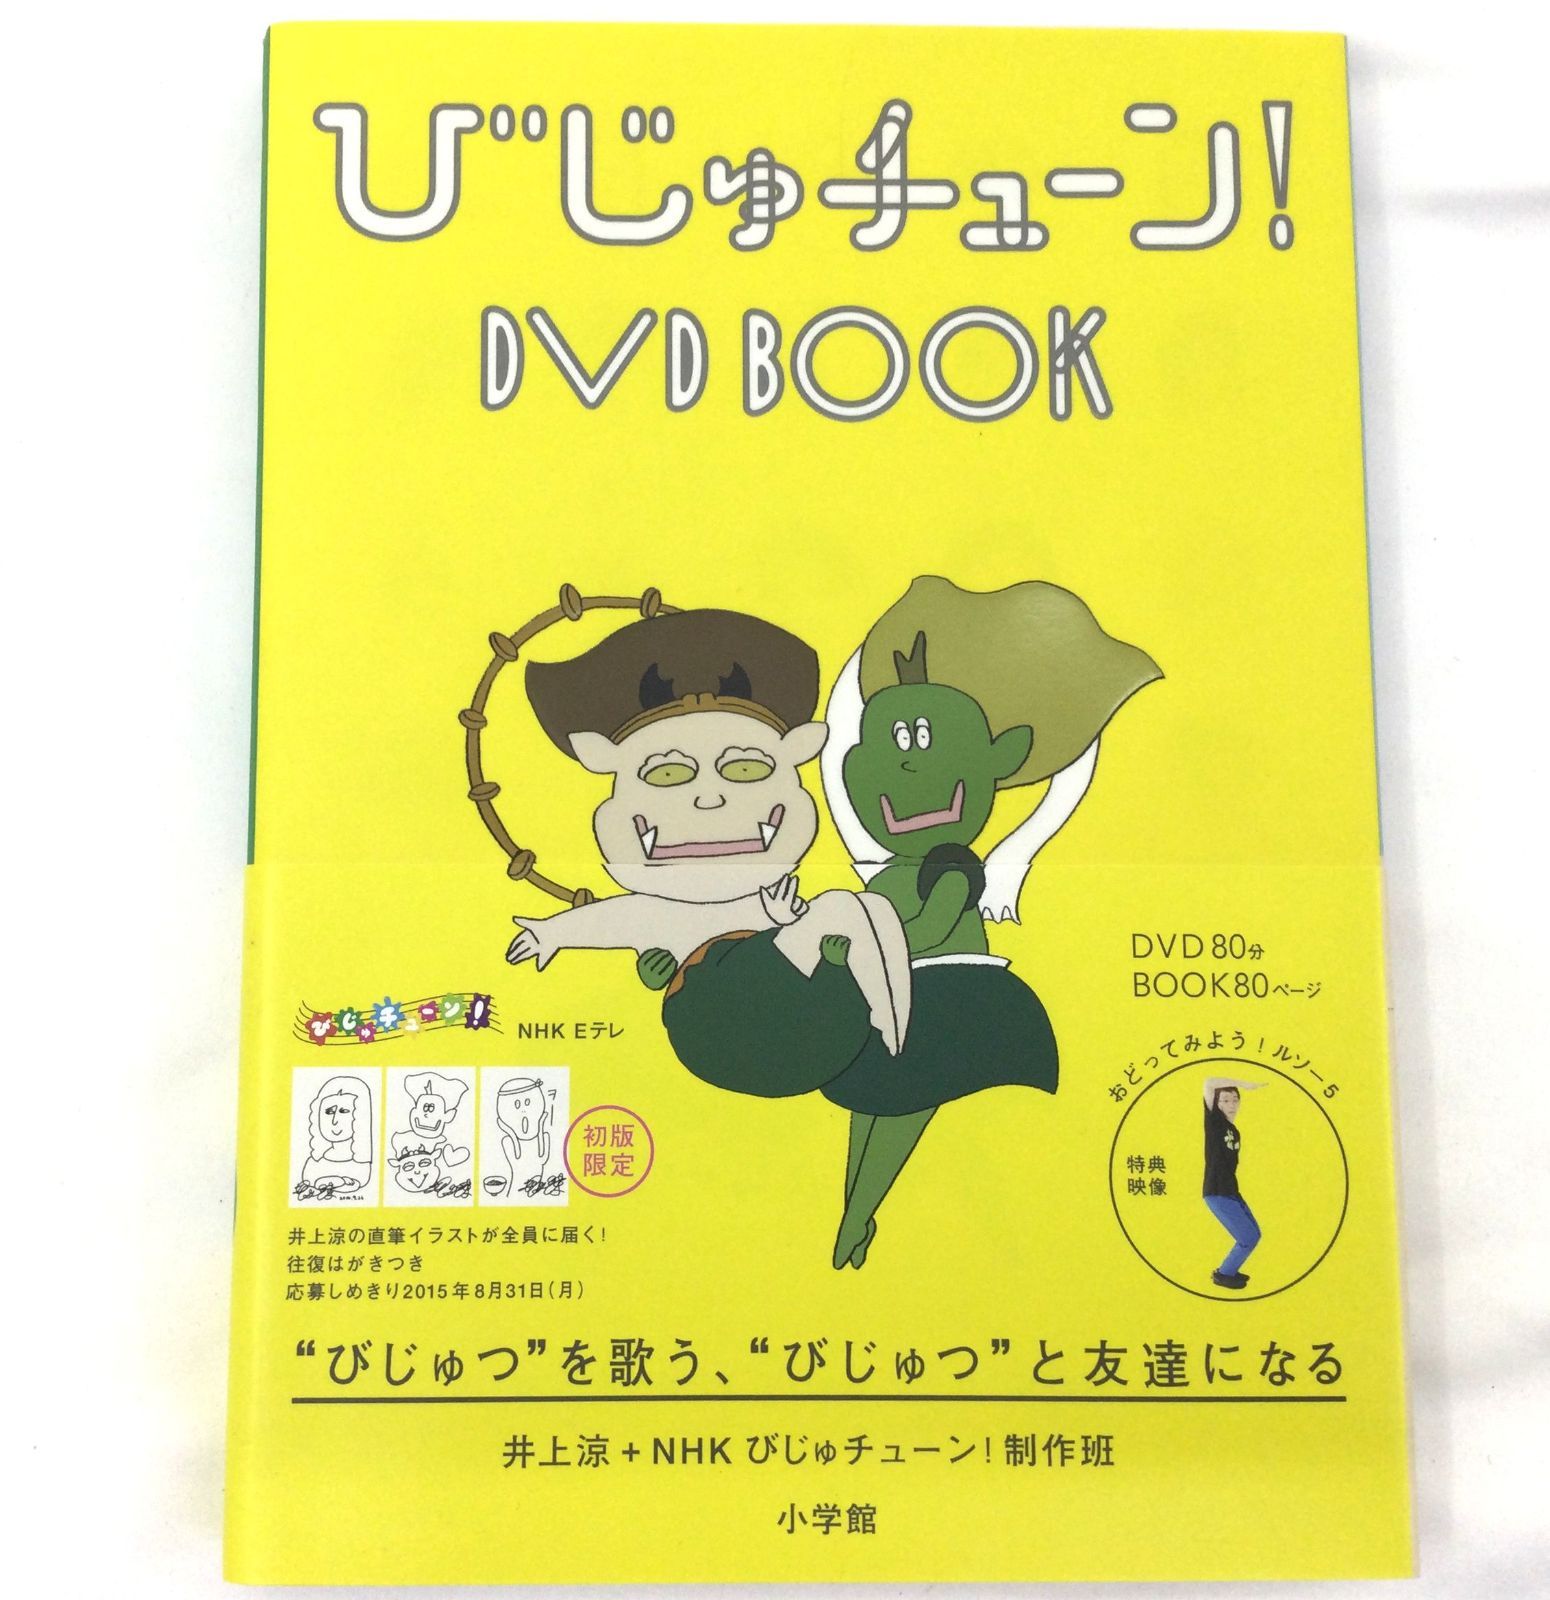 びじゅチューン!DVD BOOK - アート